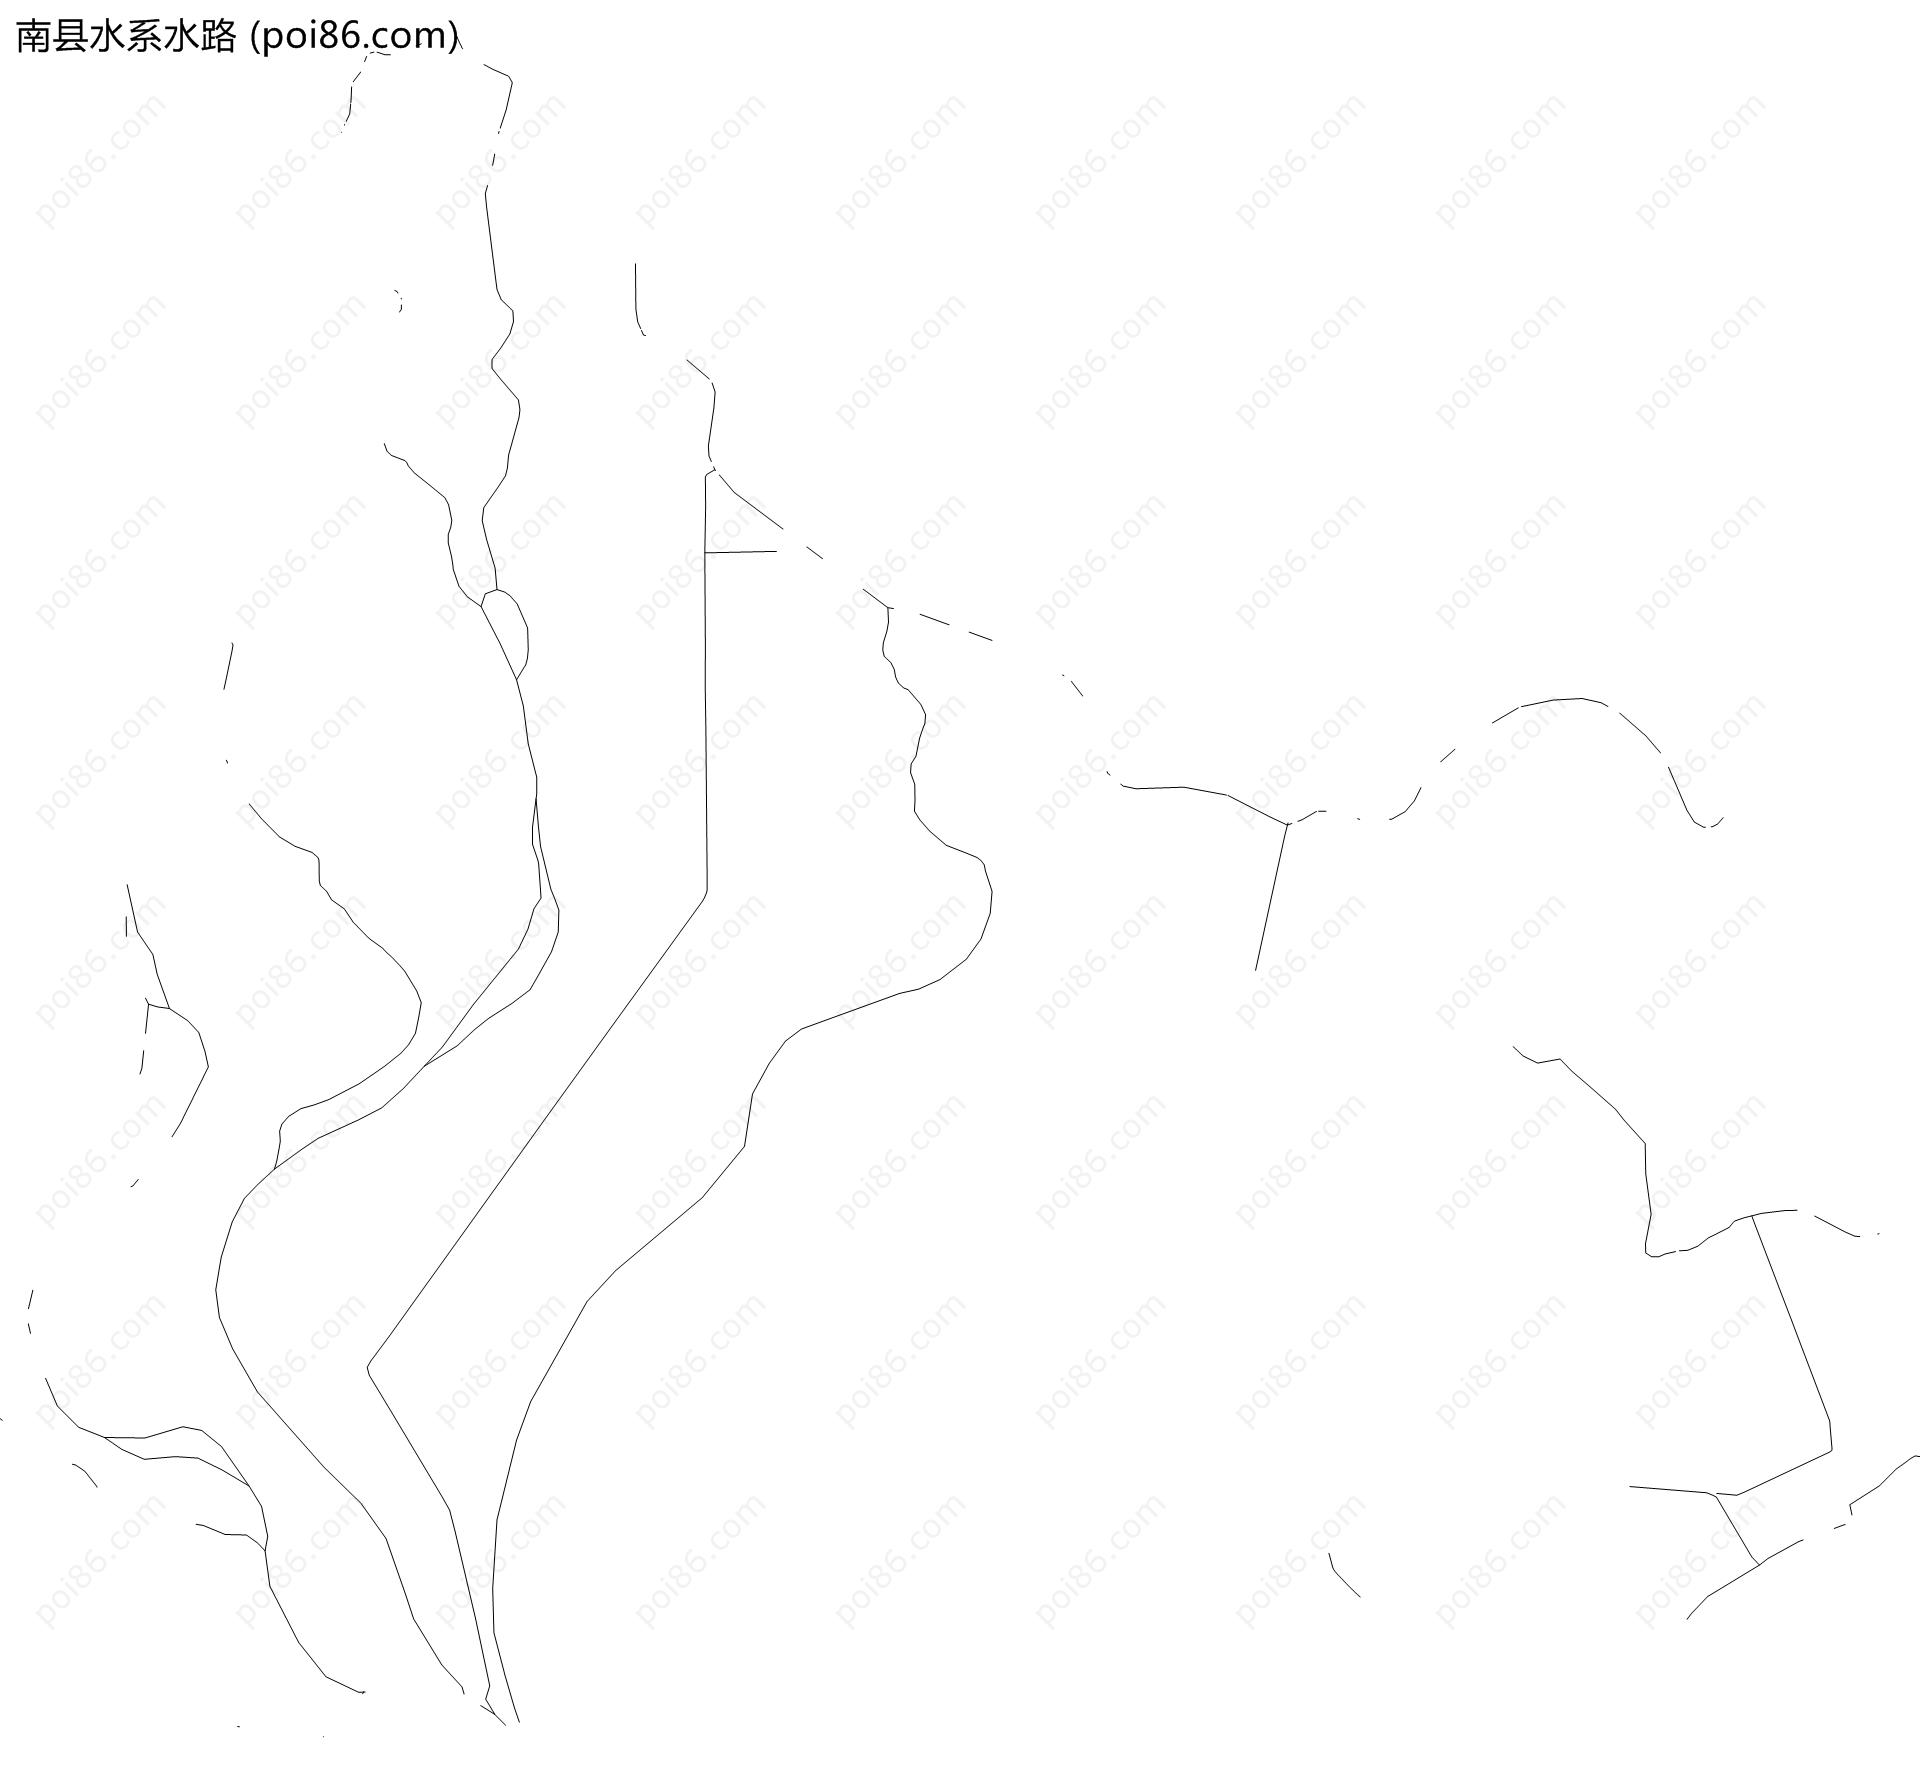 南县水系水路地图